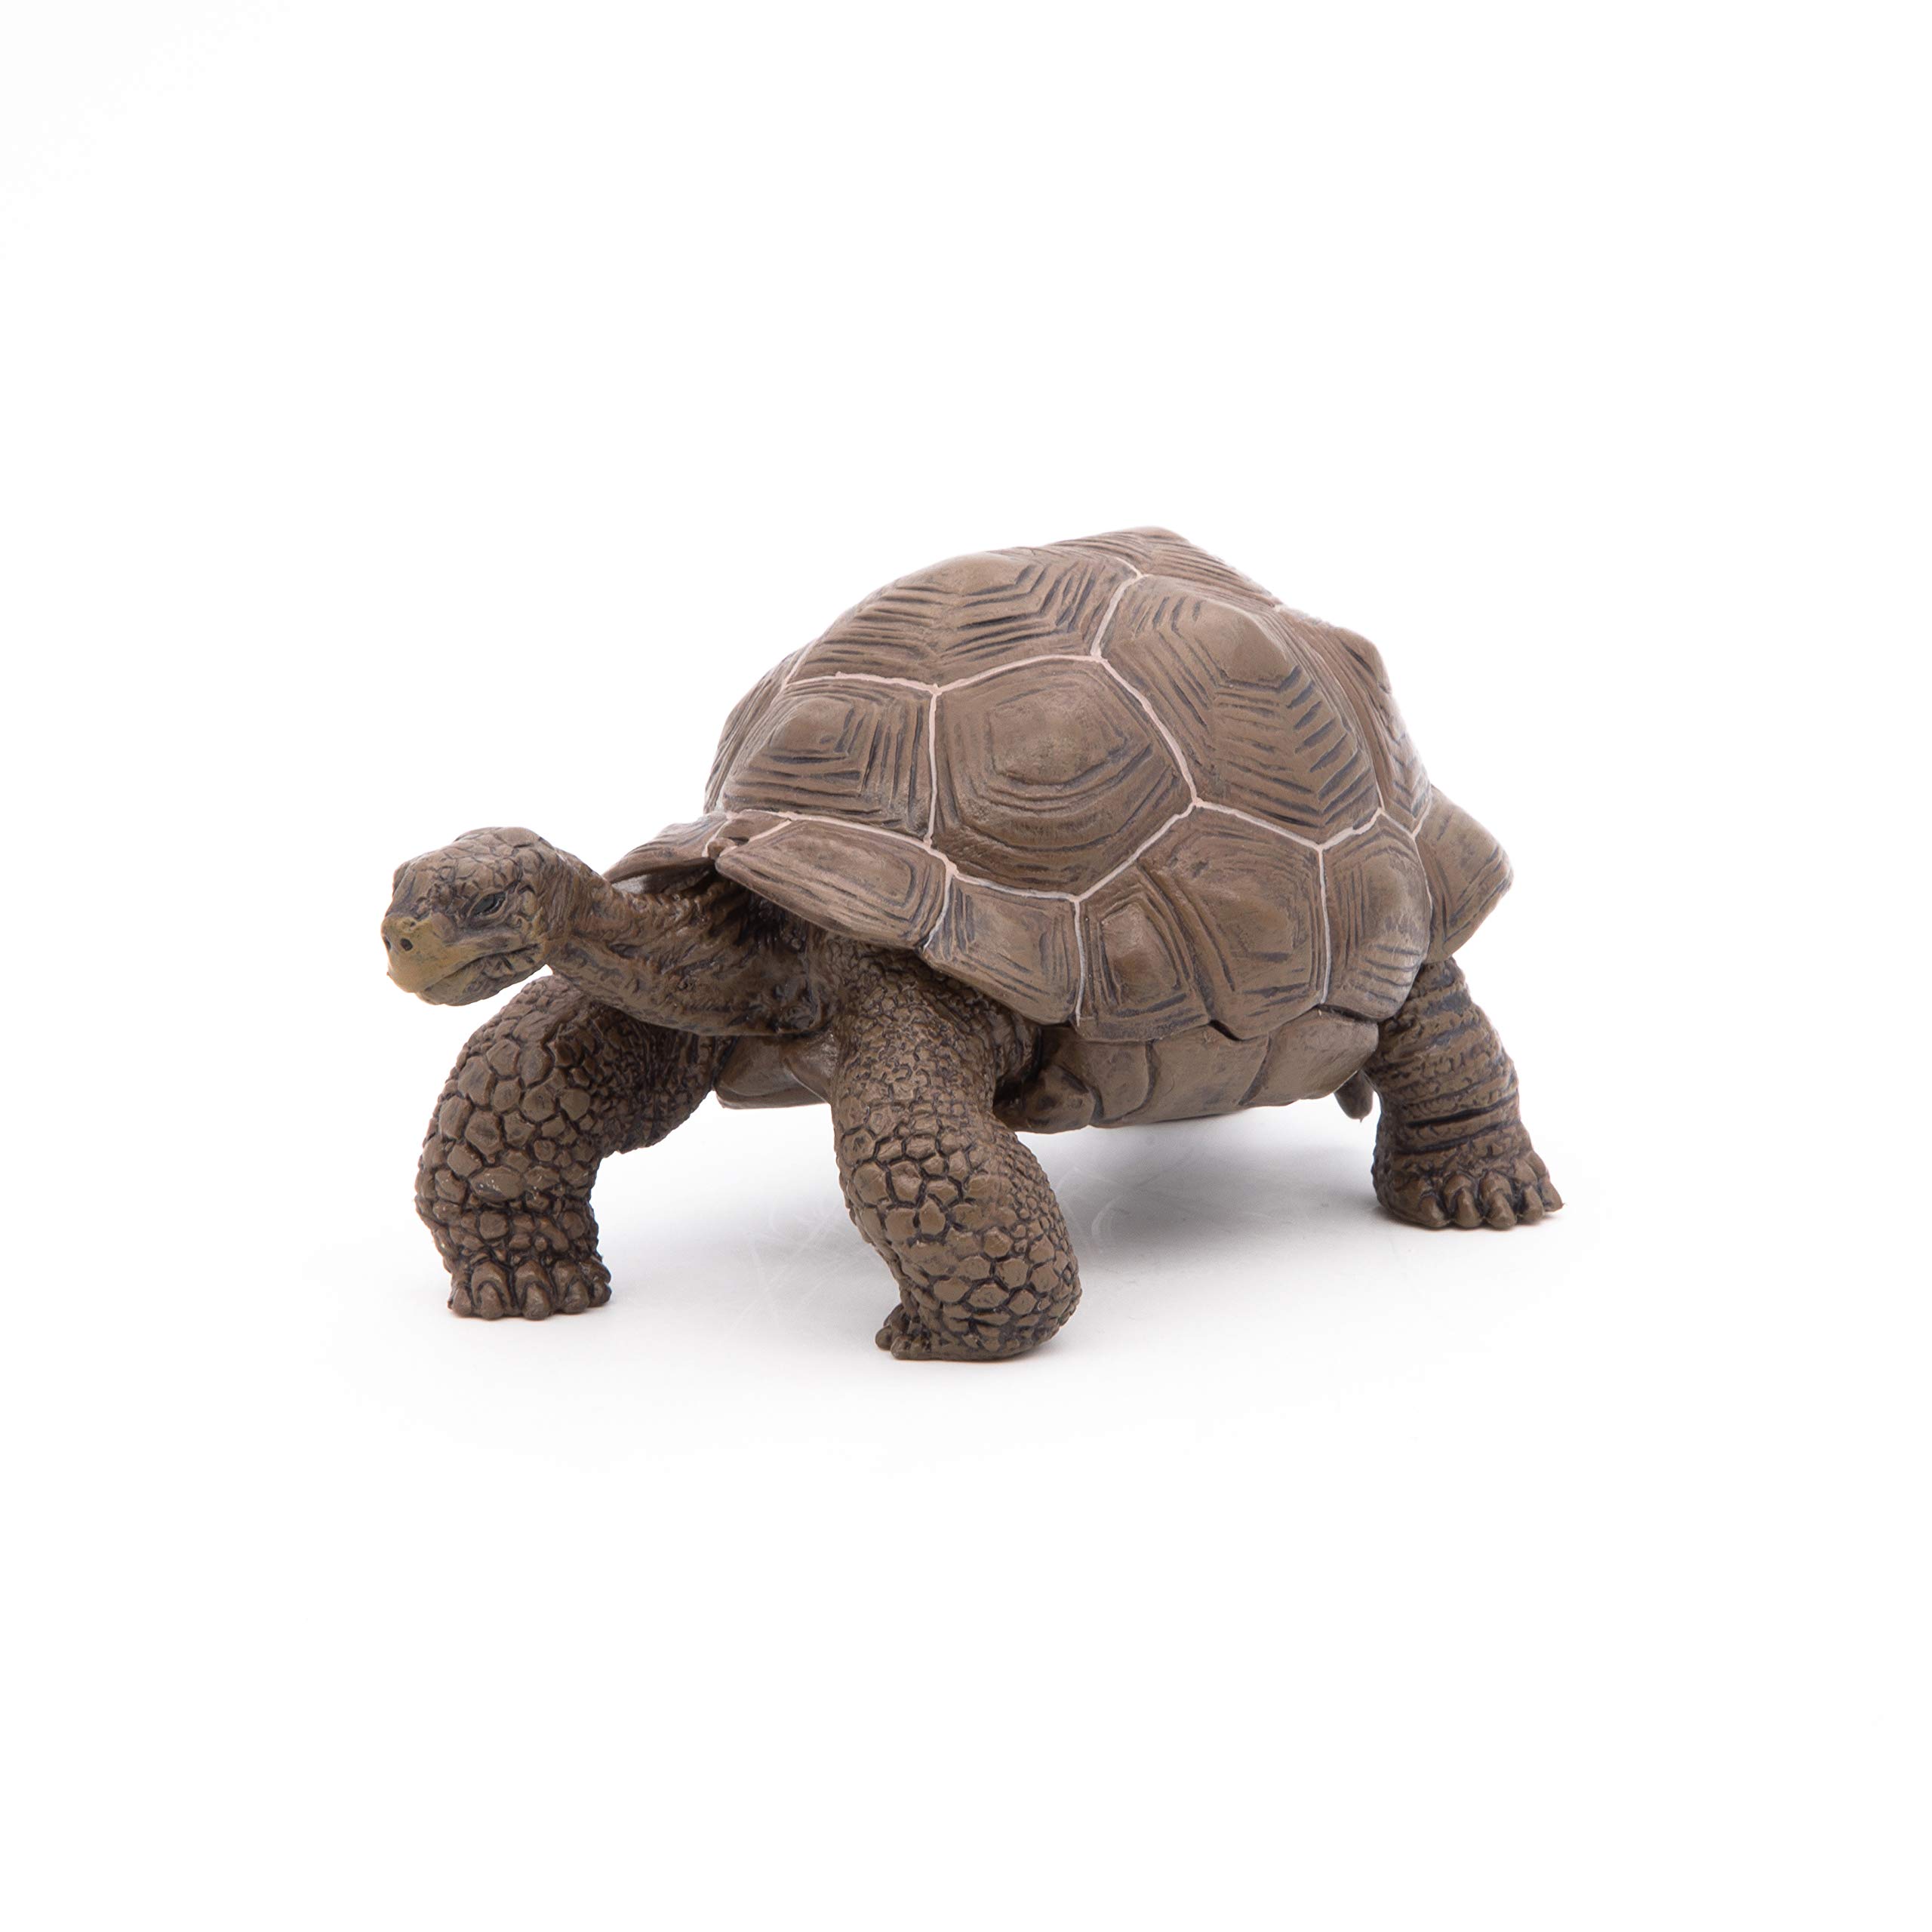 Papo Galapagos Tortoise Toy Figure